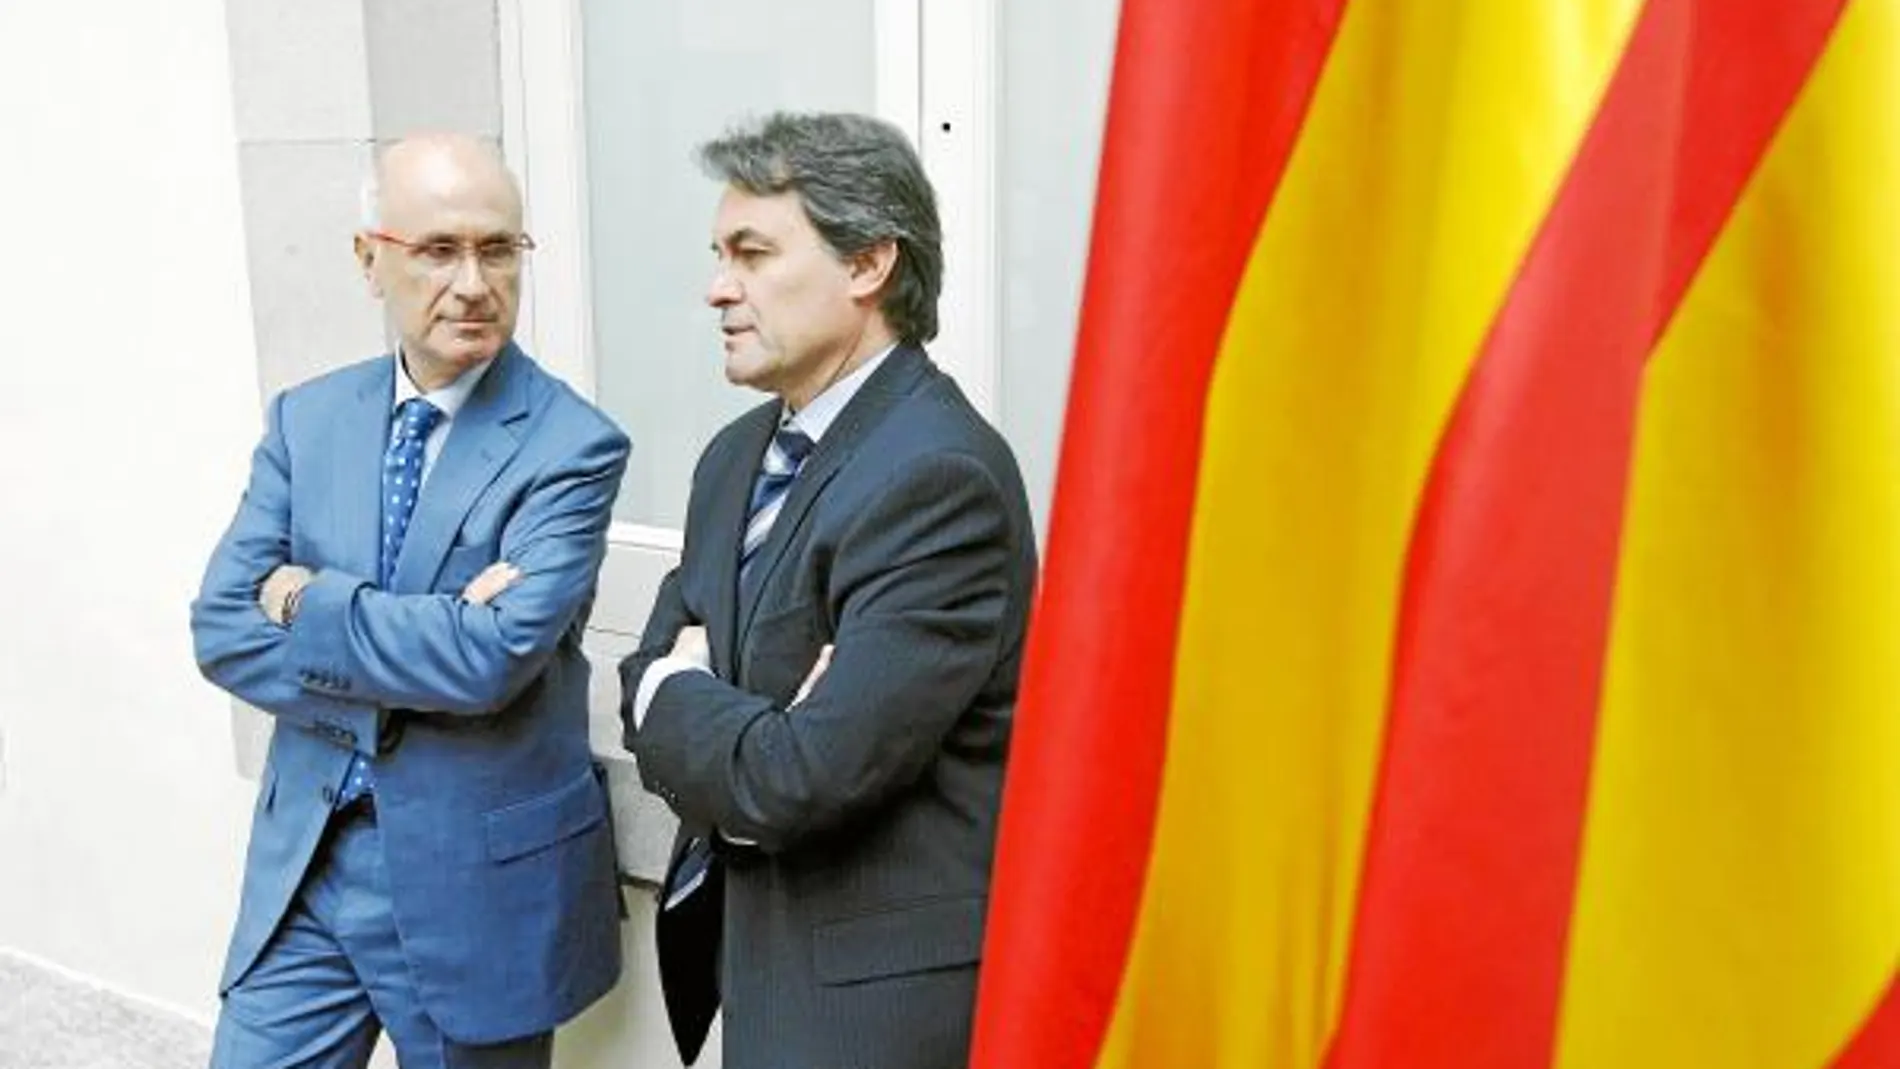 Duran Lleida y Artur Mas quieren el respaldo del electorado catalanista del PSC